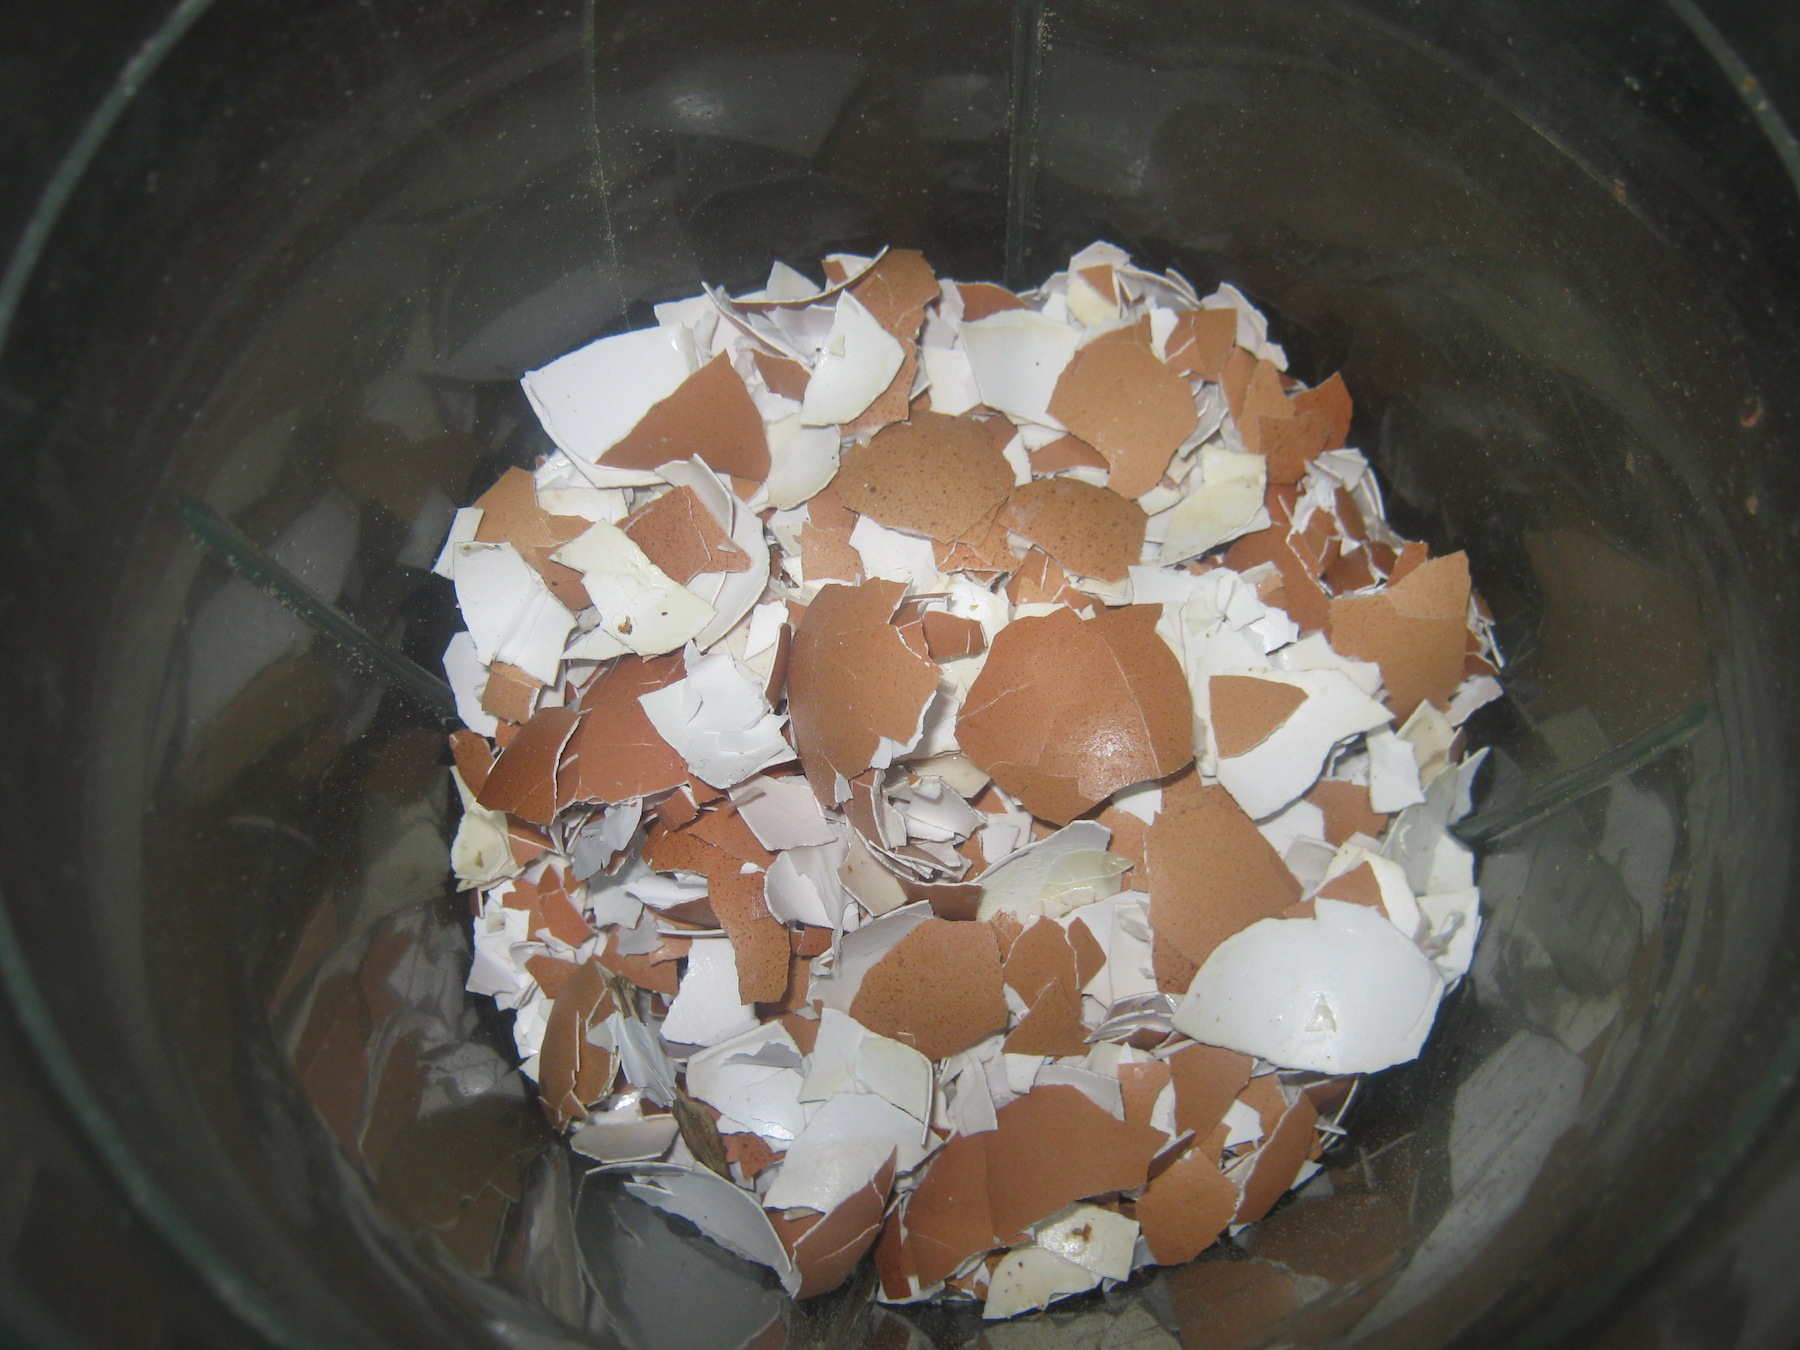 Broken egg shells in a food processor